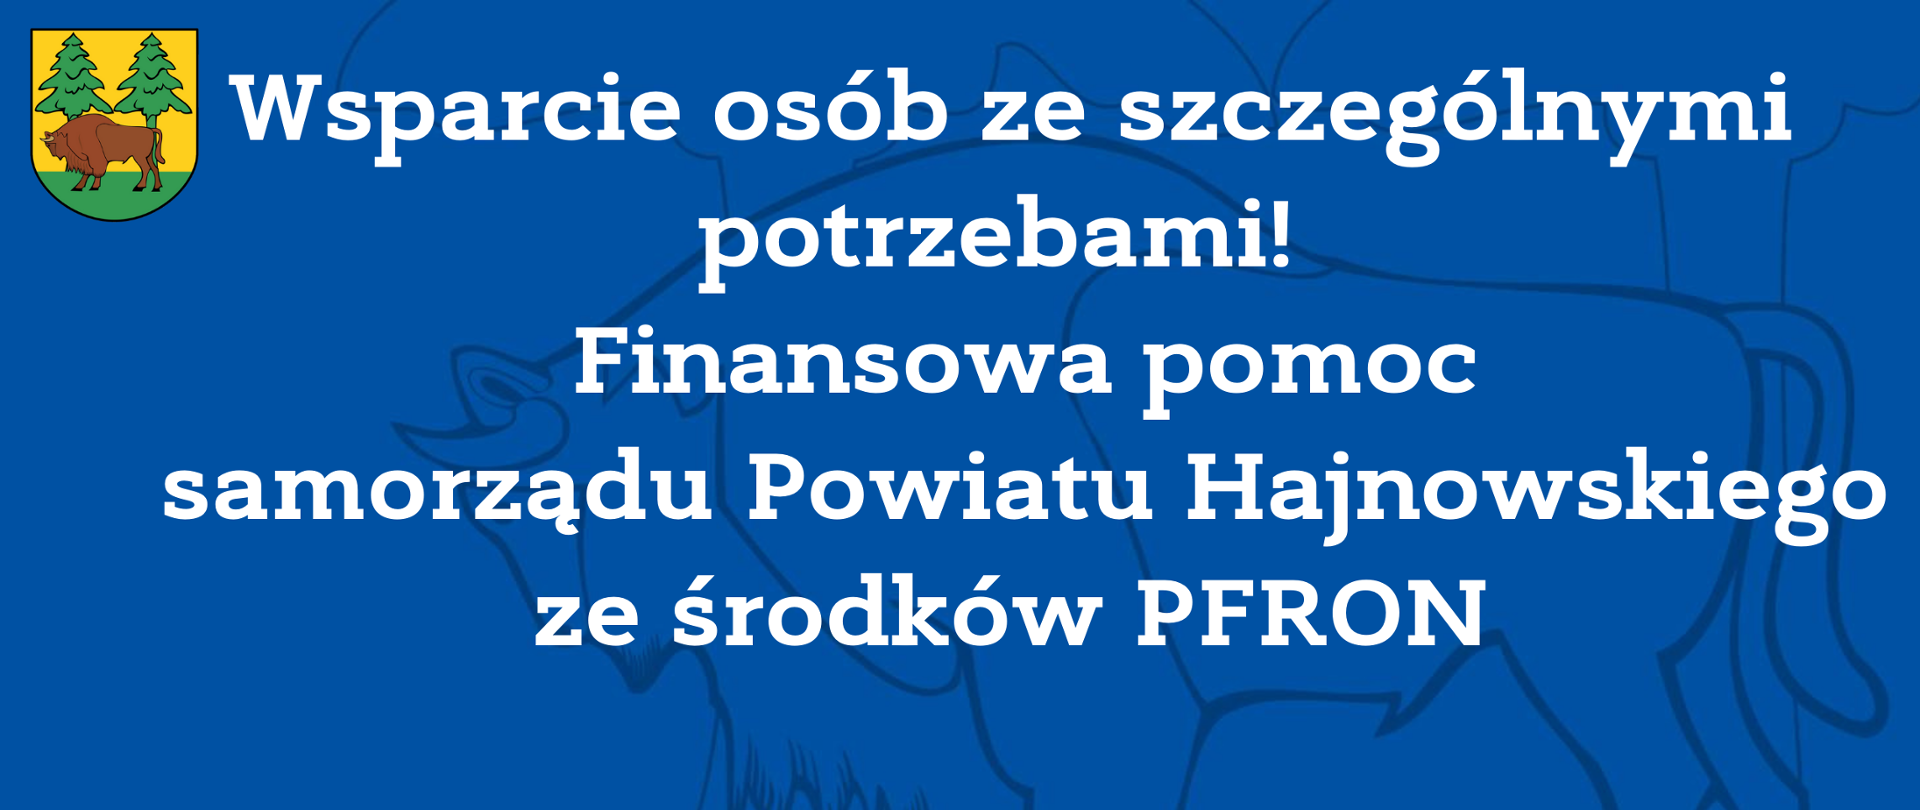 Wsparcie osób ze szczególnymi potrzebami! Finansowa pomoc samorządu Powiatu Hajnowskiego ze środków PFRON